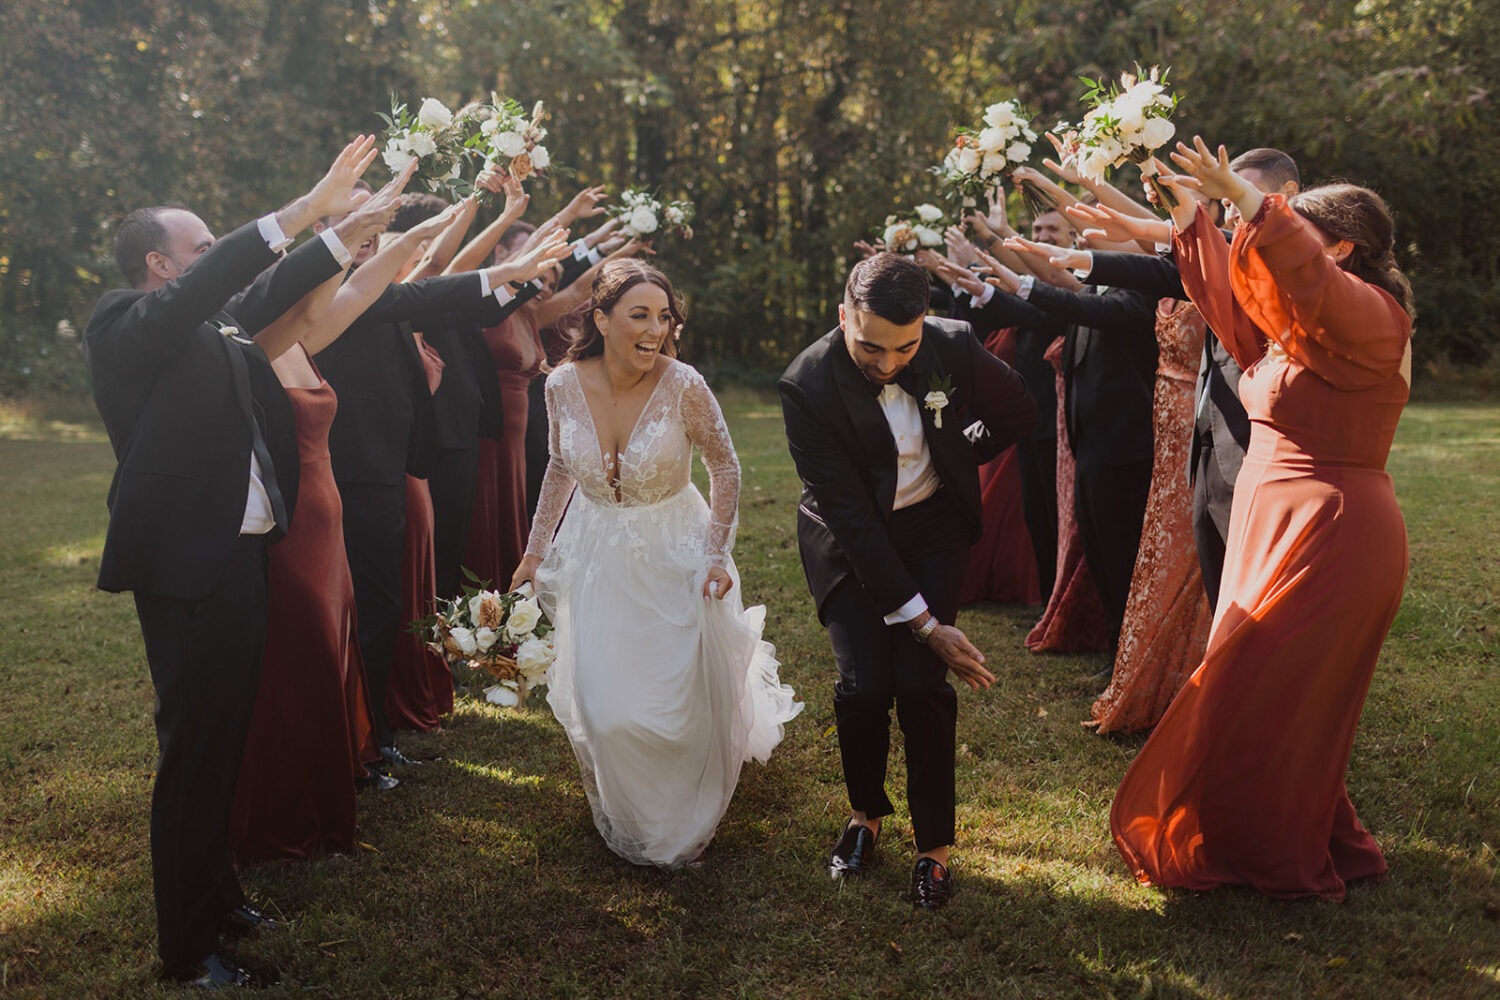 couple dances through wedding party arch at outdoor wedding